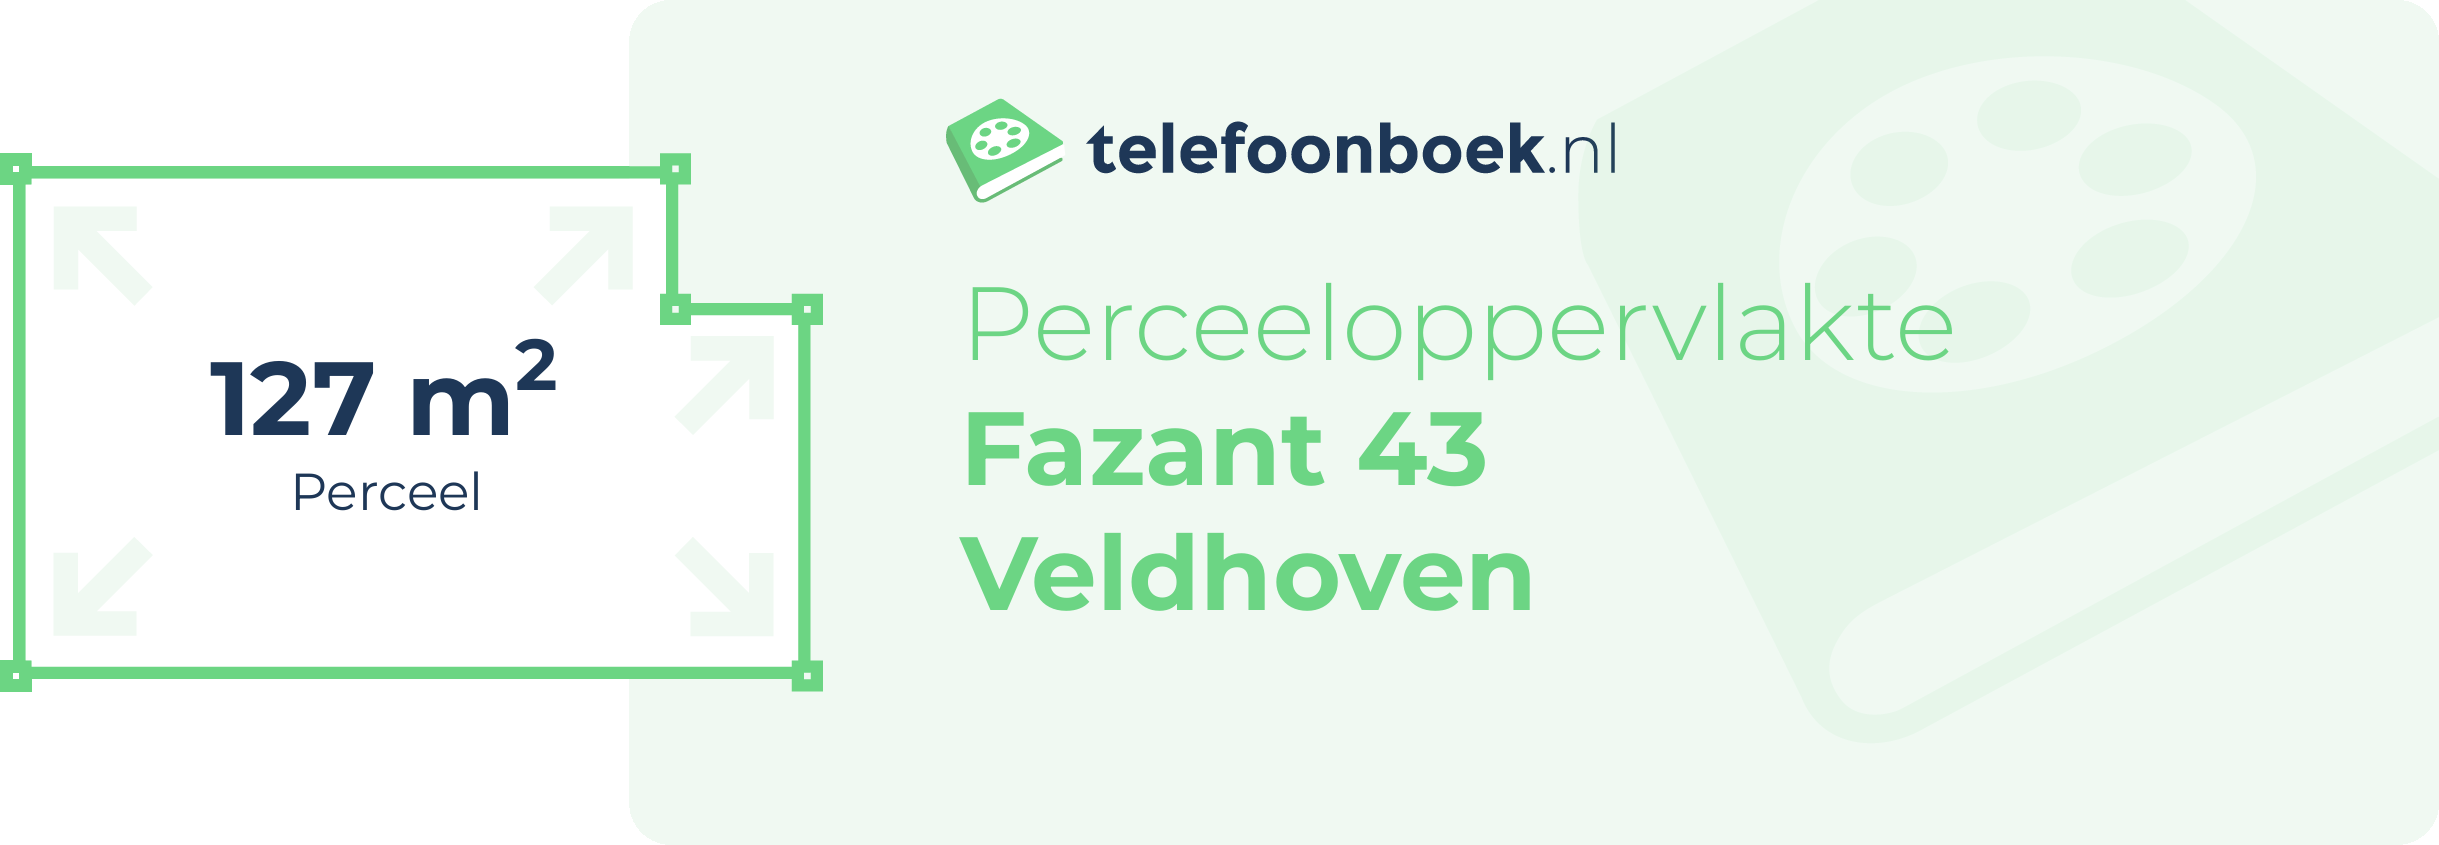 Perceeloppervlakte Fazant 43 Veldhoven